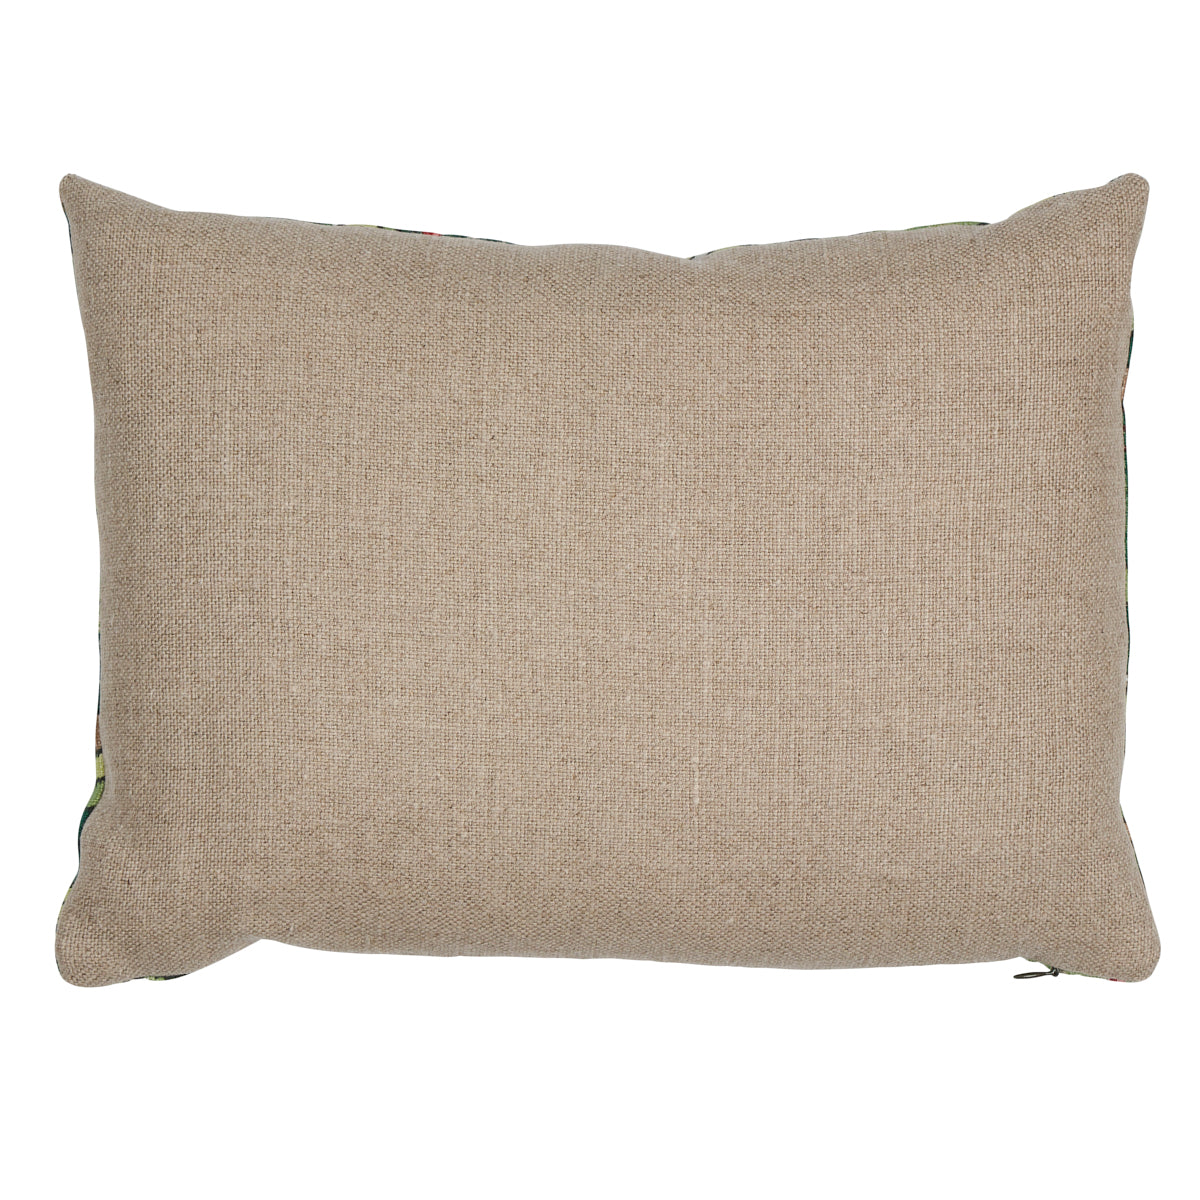 Purchase So17738112 | Rolling Hills Pillow, Green - Schumacher Pillows